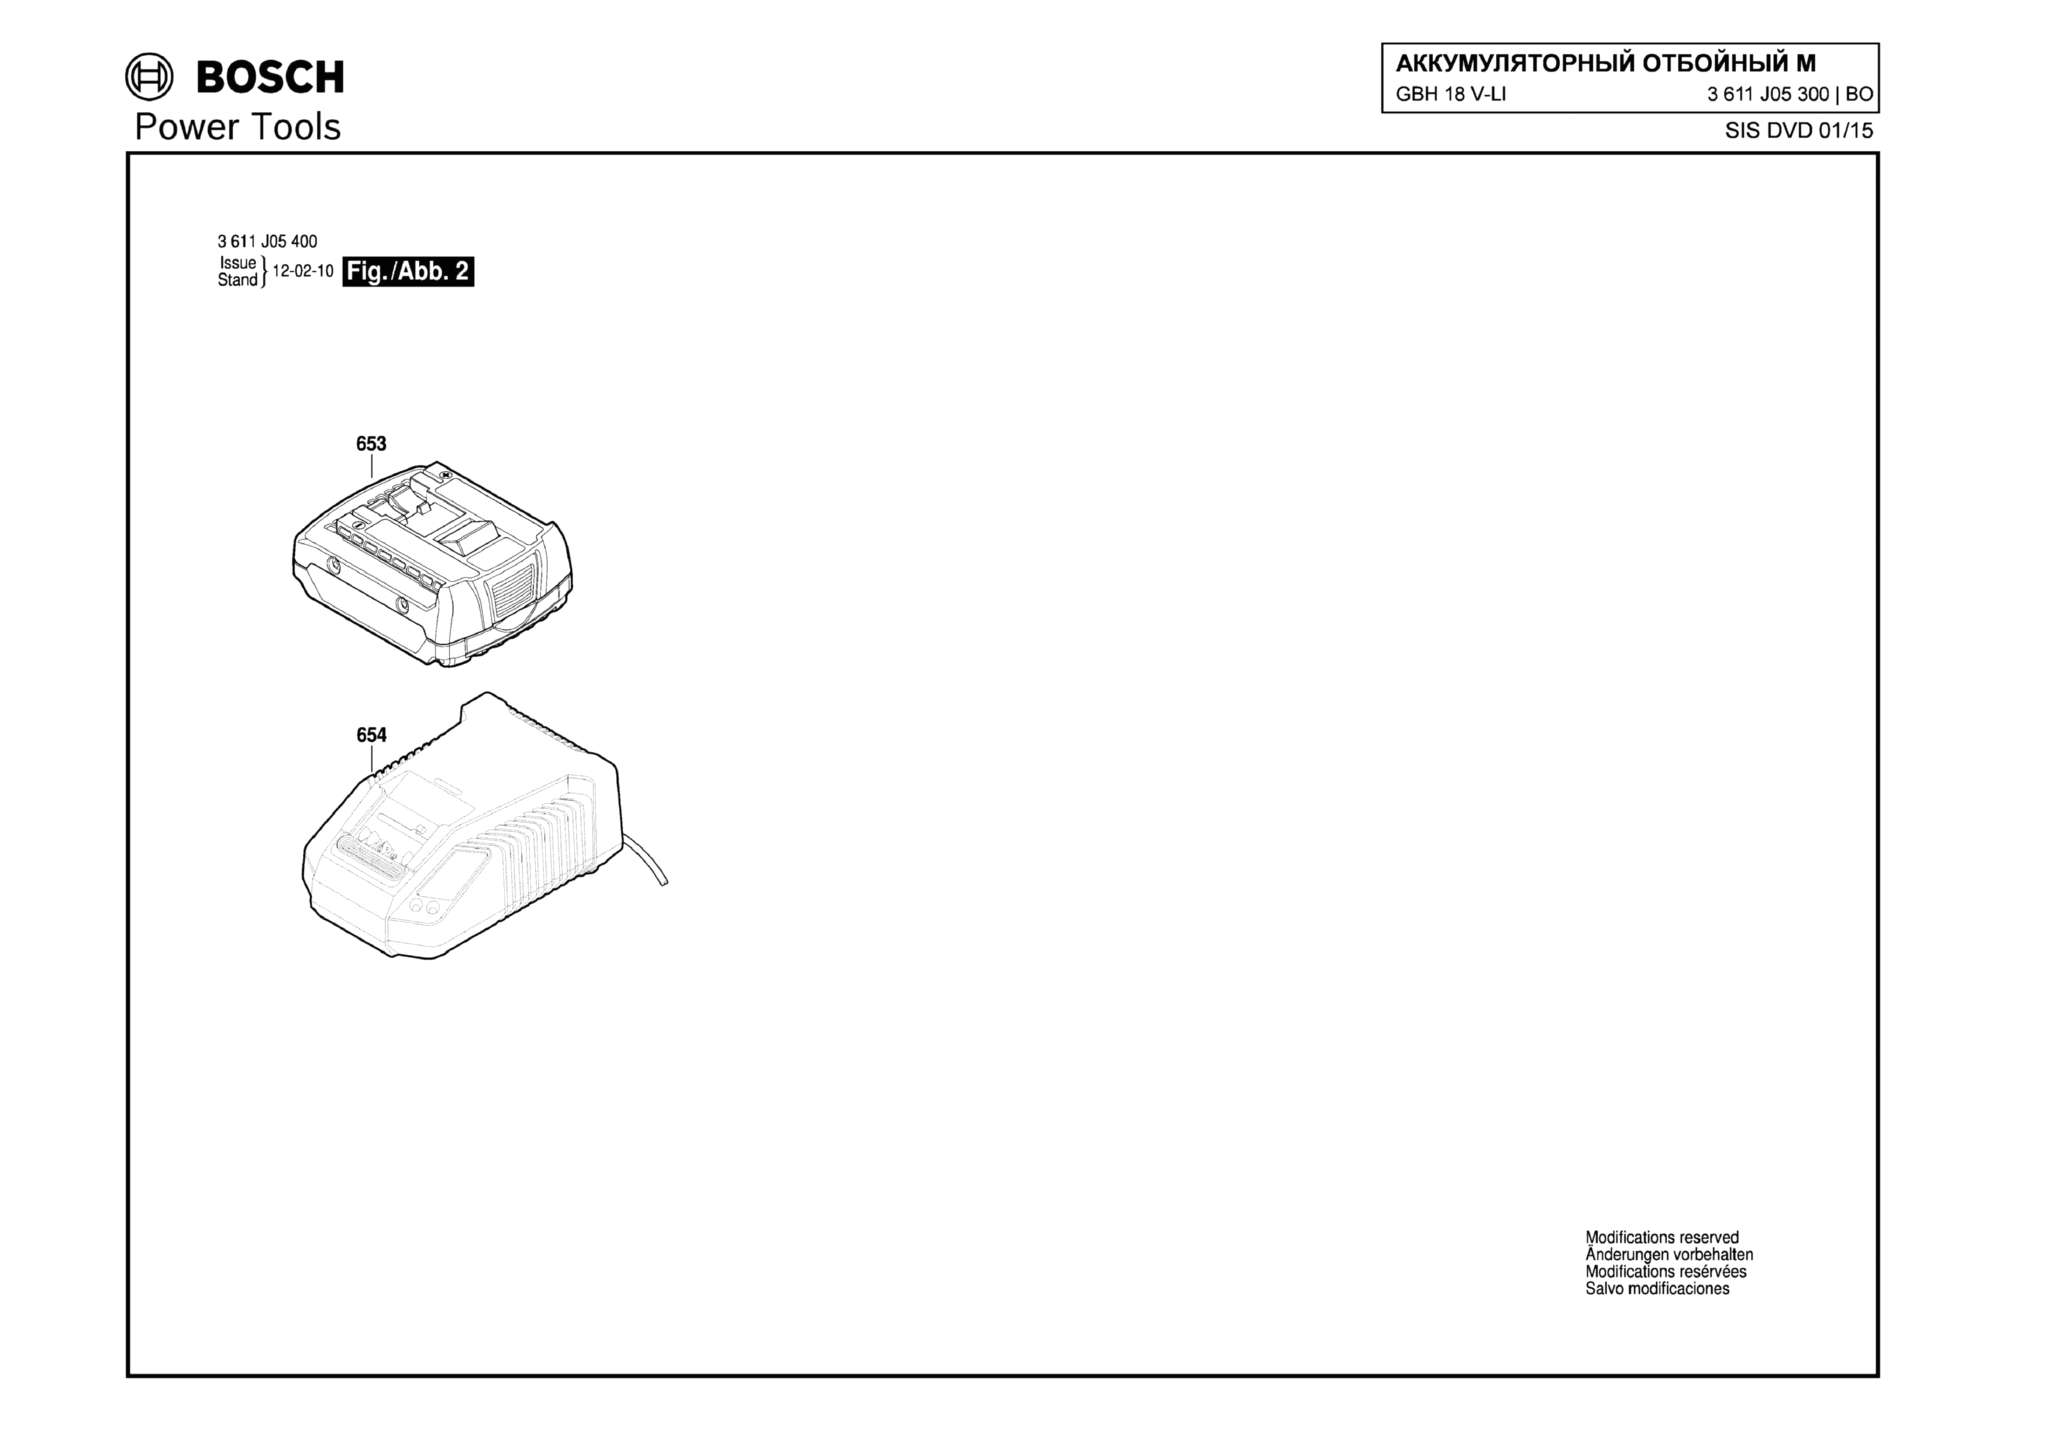 Запчасти, схема и деталировка Bosch GBH 18 V-LI (ТИП 3611J05300) (ЧАСТЬ 2)